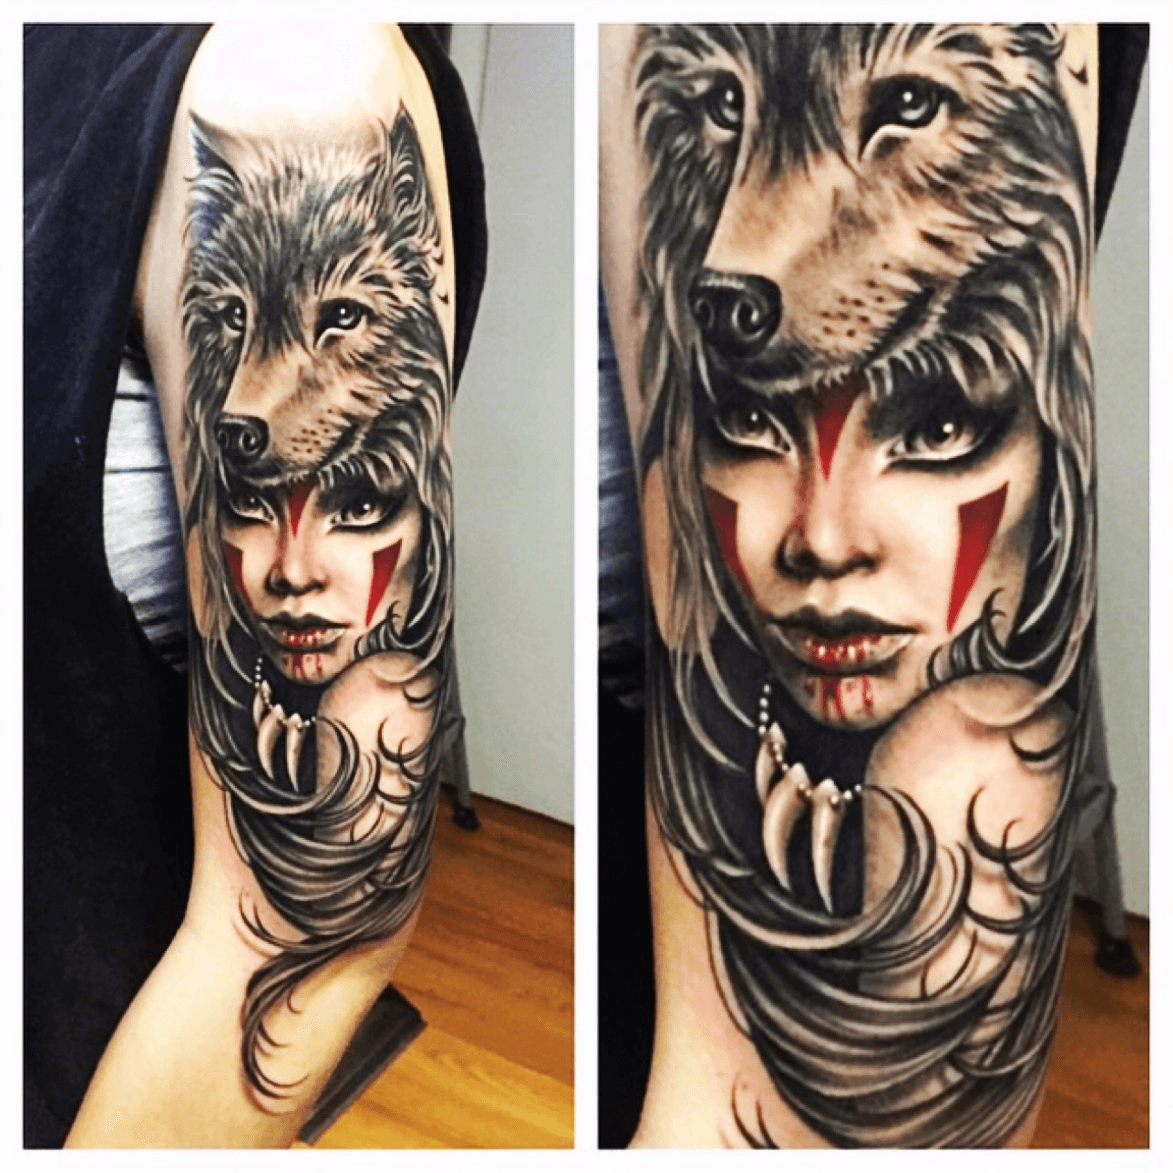 Warrior Woman with Skull Headdress Tattoo by Rick Mcgrath TattooNOW